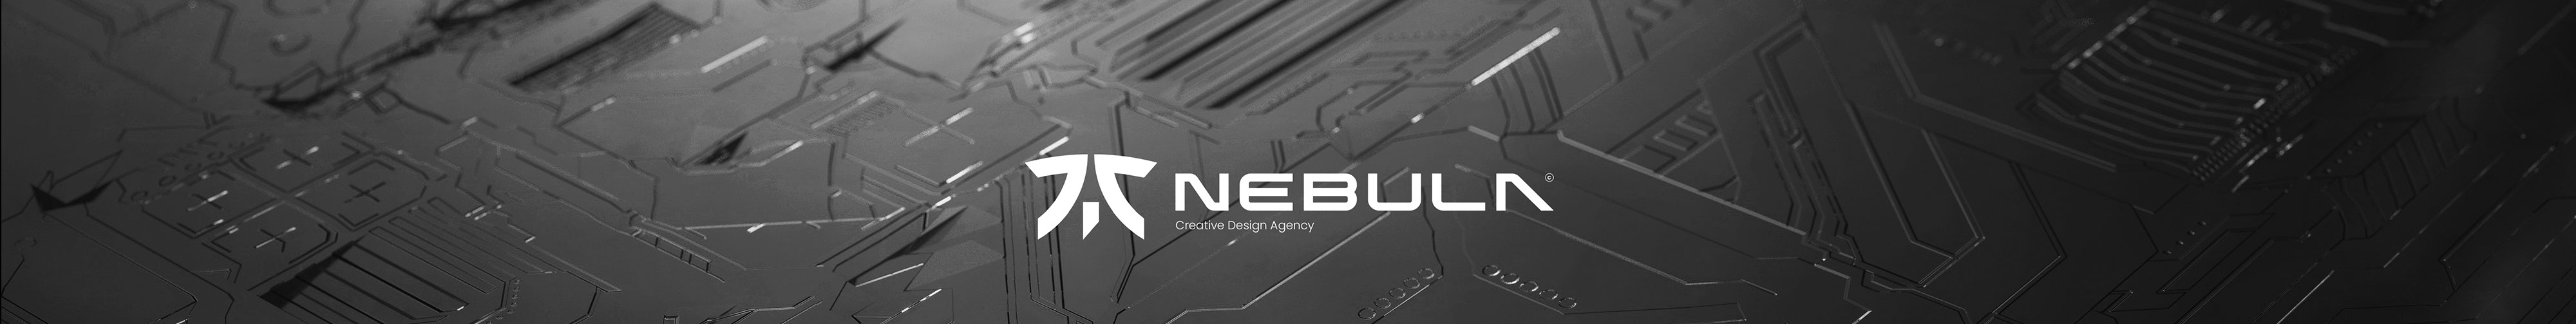 Nebula© Studio's profile banner